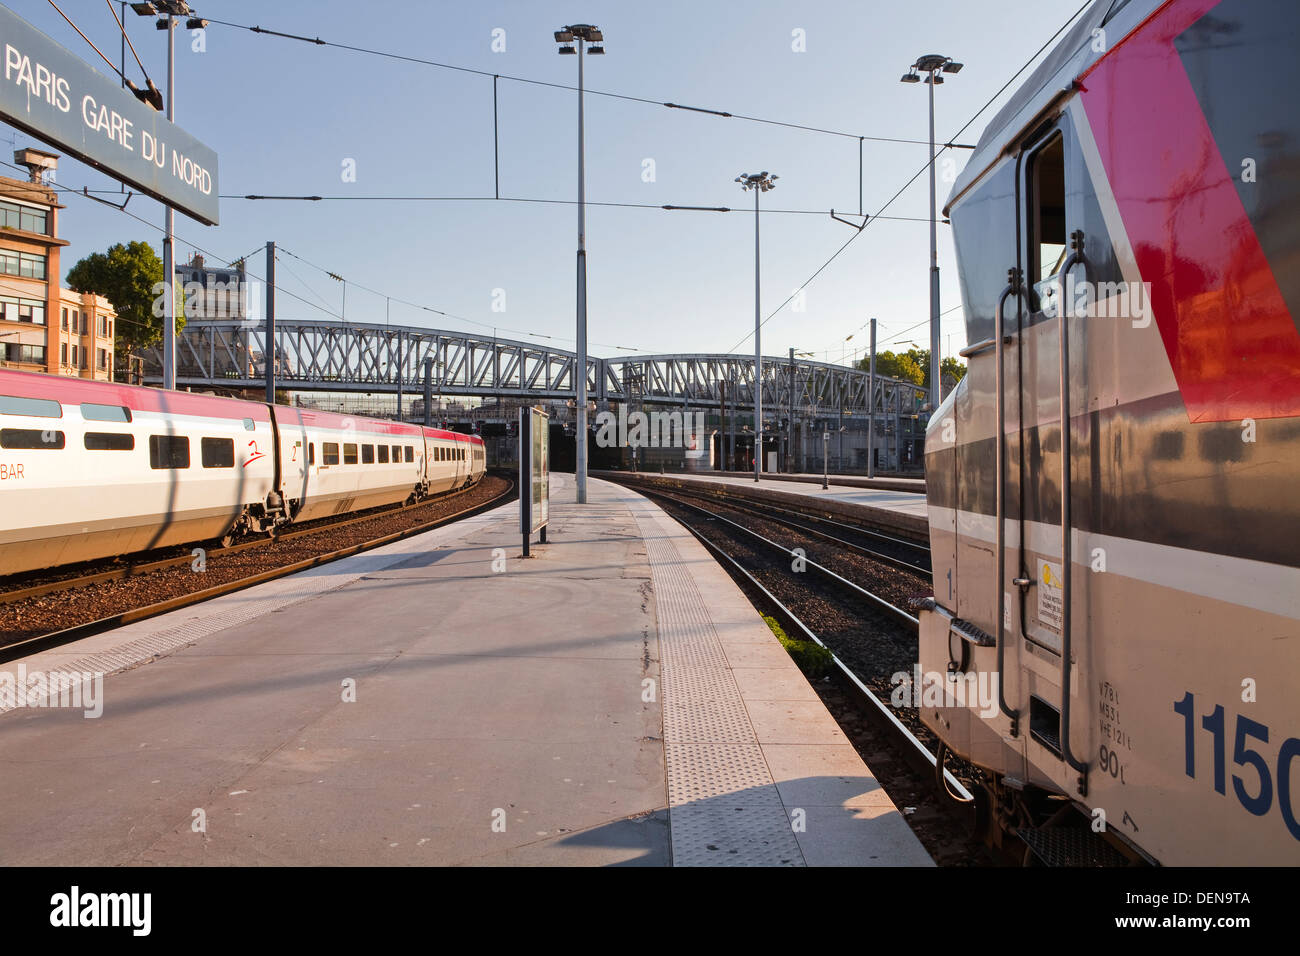 Ein intercity-express-Zug und Thalys Hochgeschwindigkeitszug erwarten Abreise am Bahnhof Gare du Nord in Paris. Stockfoto